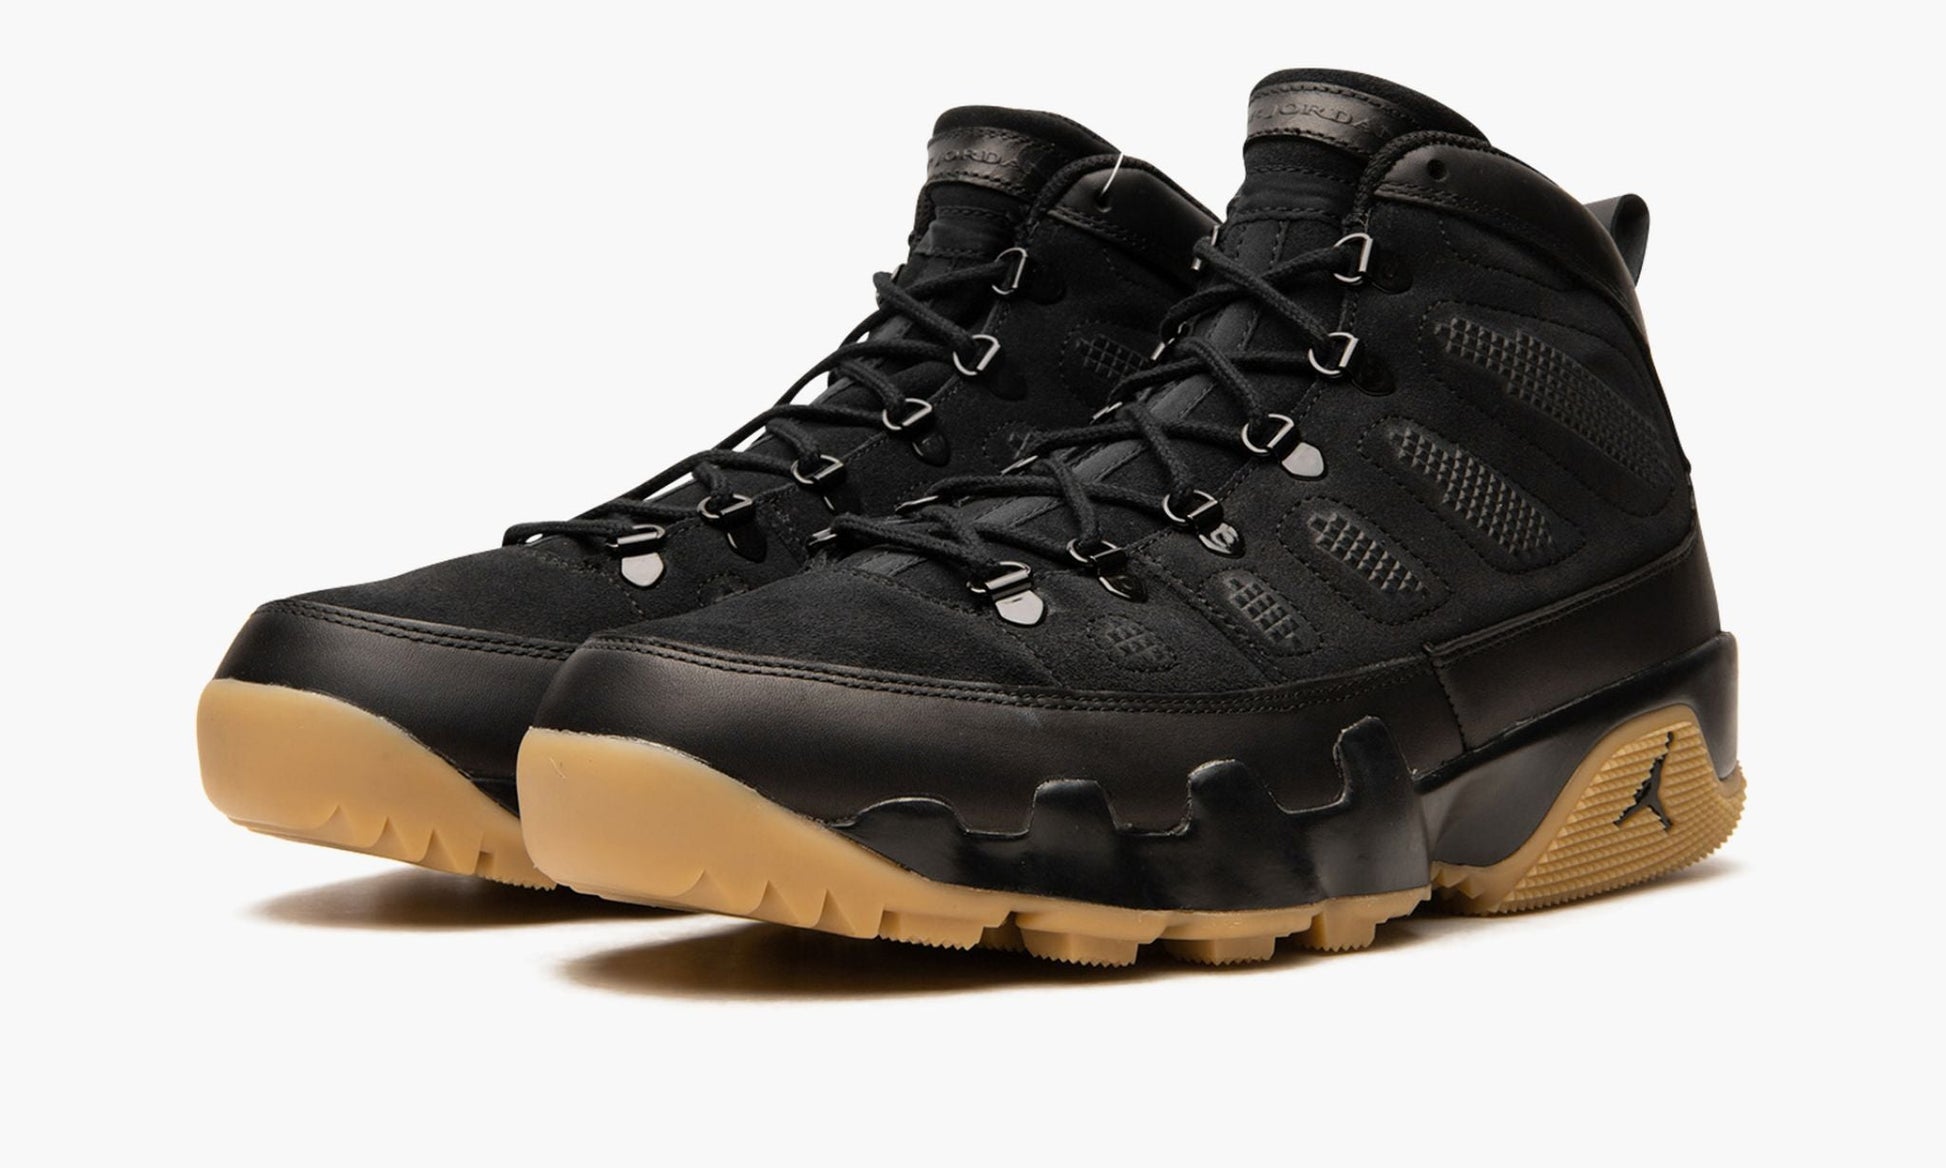 Air Jordan 9 Boot "Black / Gum""